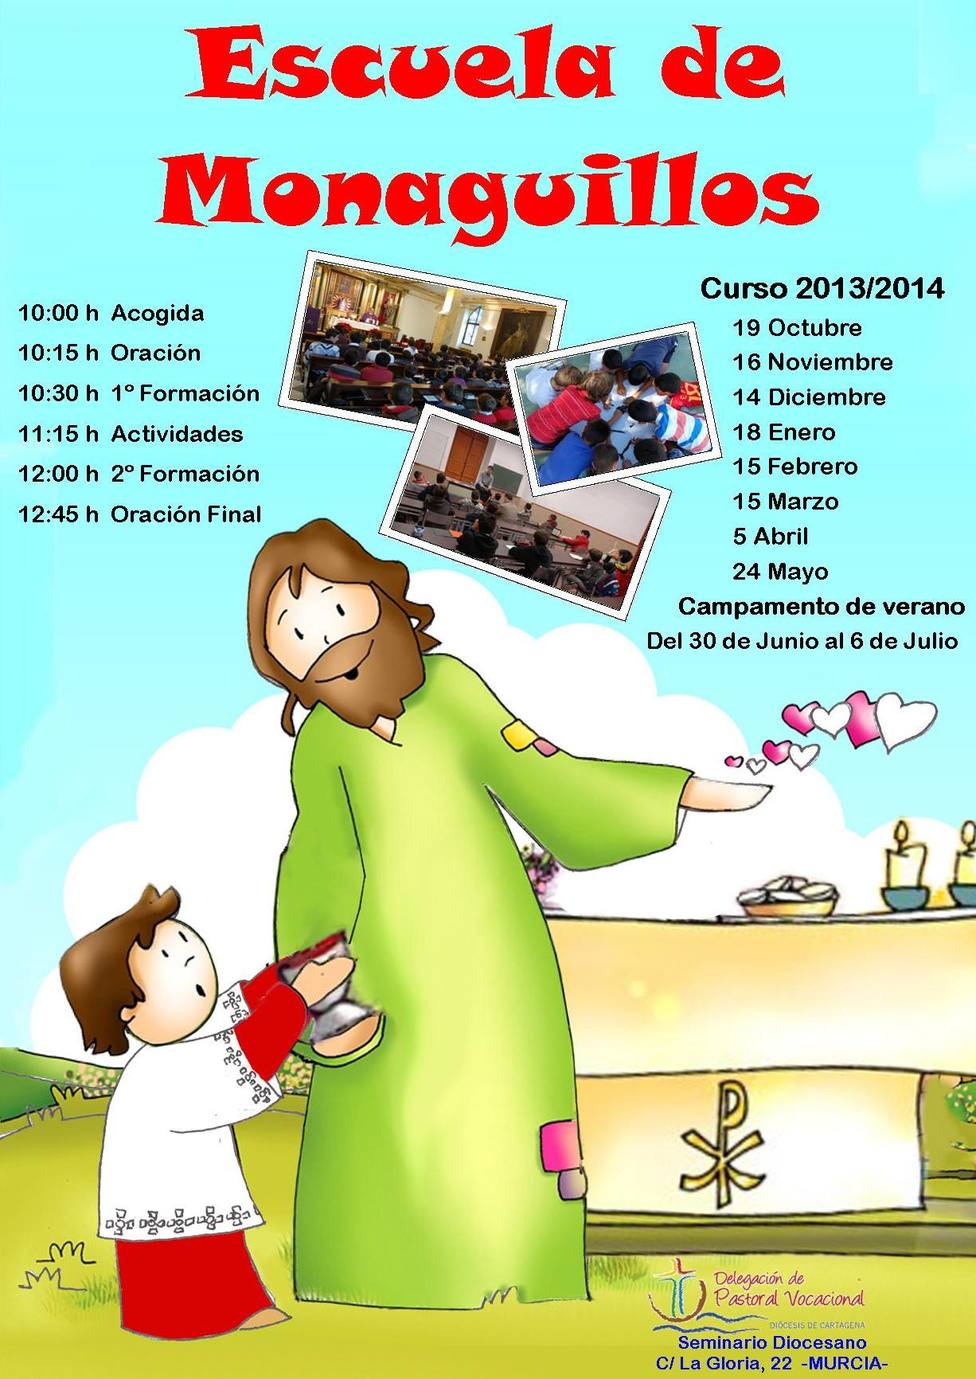 Comienza la Escuela de Monaguillos en el seminario de Murcia - Iglesia  Española - COPE